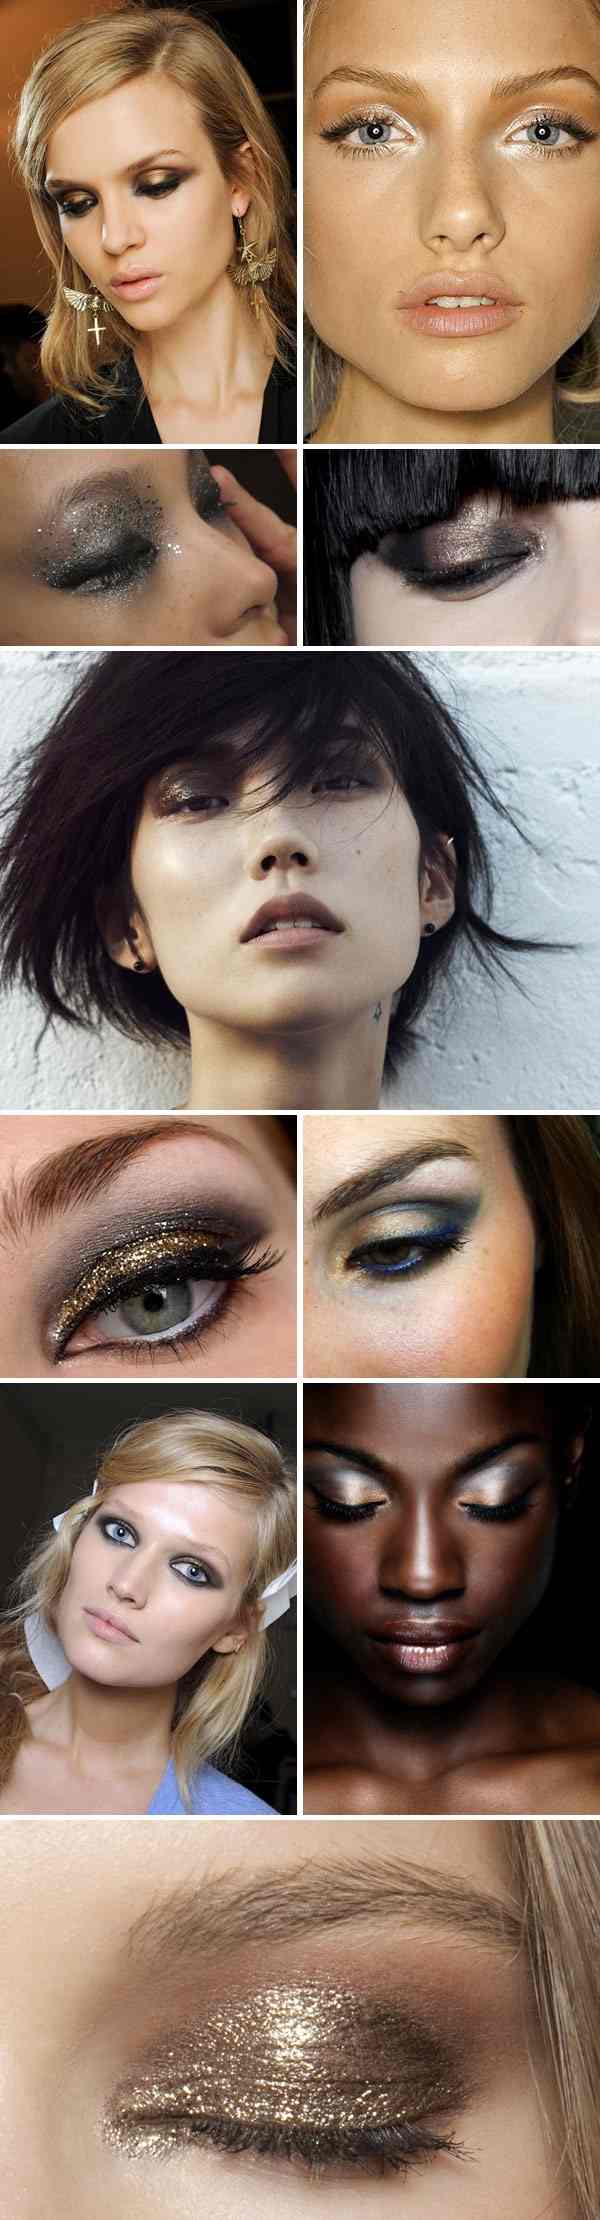 ISpyMetallicEye-brons-eye-make-up